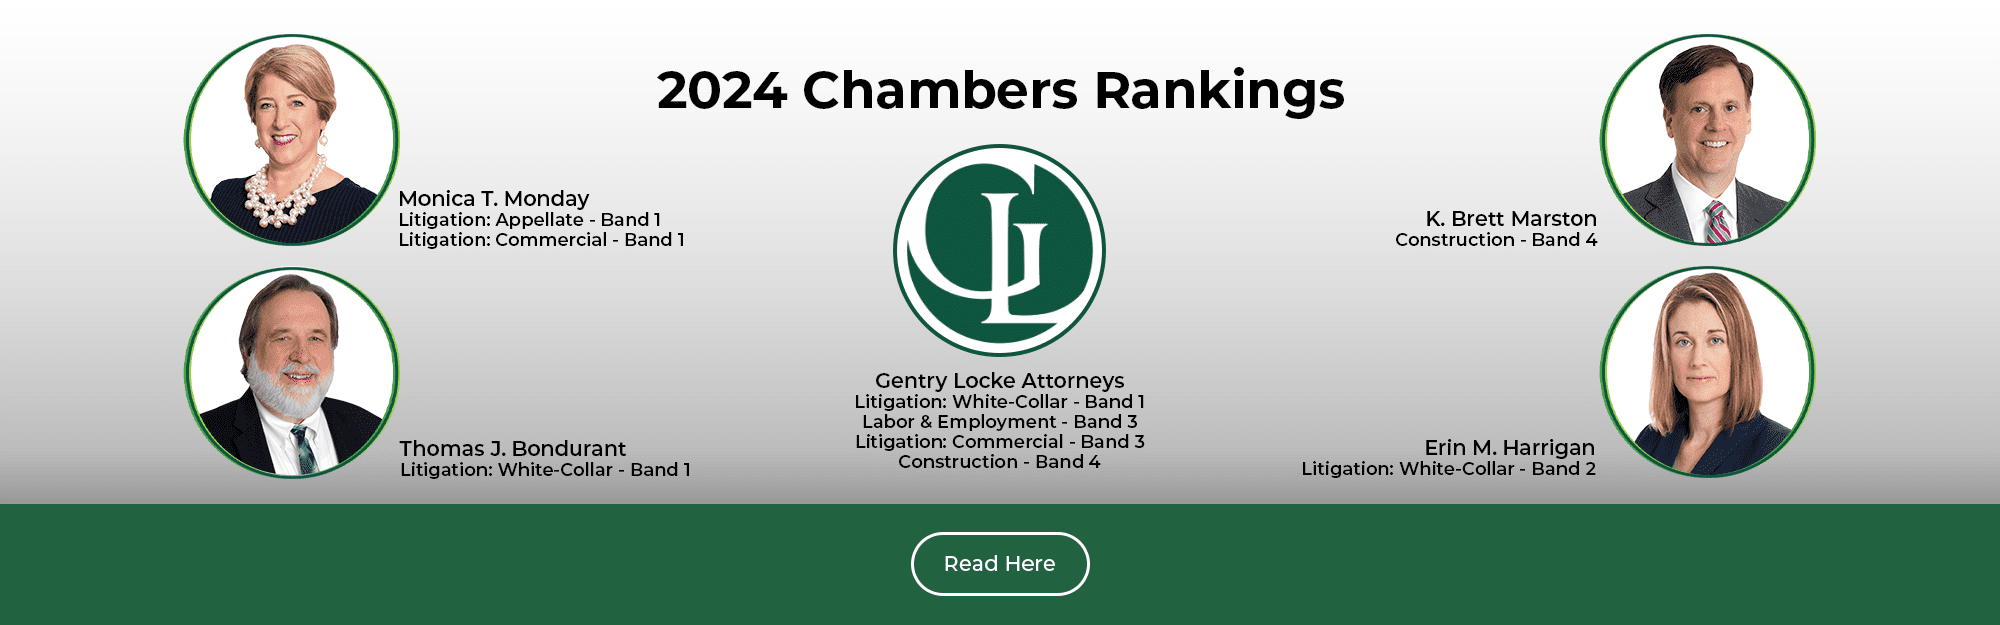 Chambers 2024 Rankings